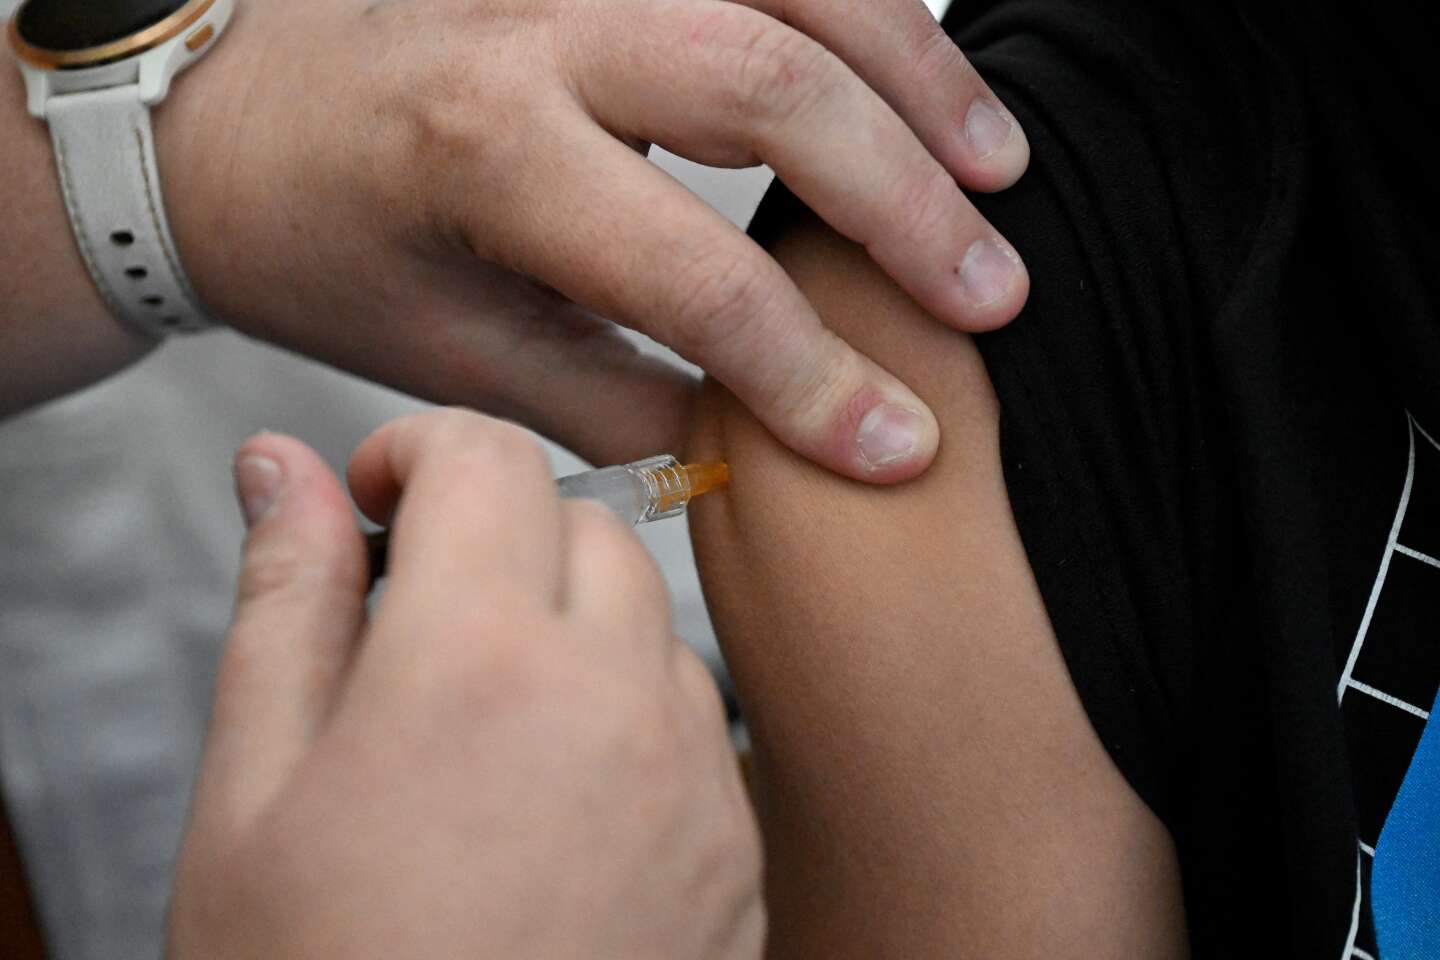 Près de Nantes, une enquête ouverte après la mort
d’un collégien à la suite d’une chute au cours d’un malaise post-vaccinal